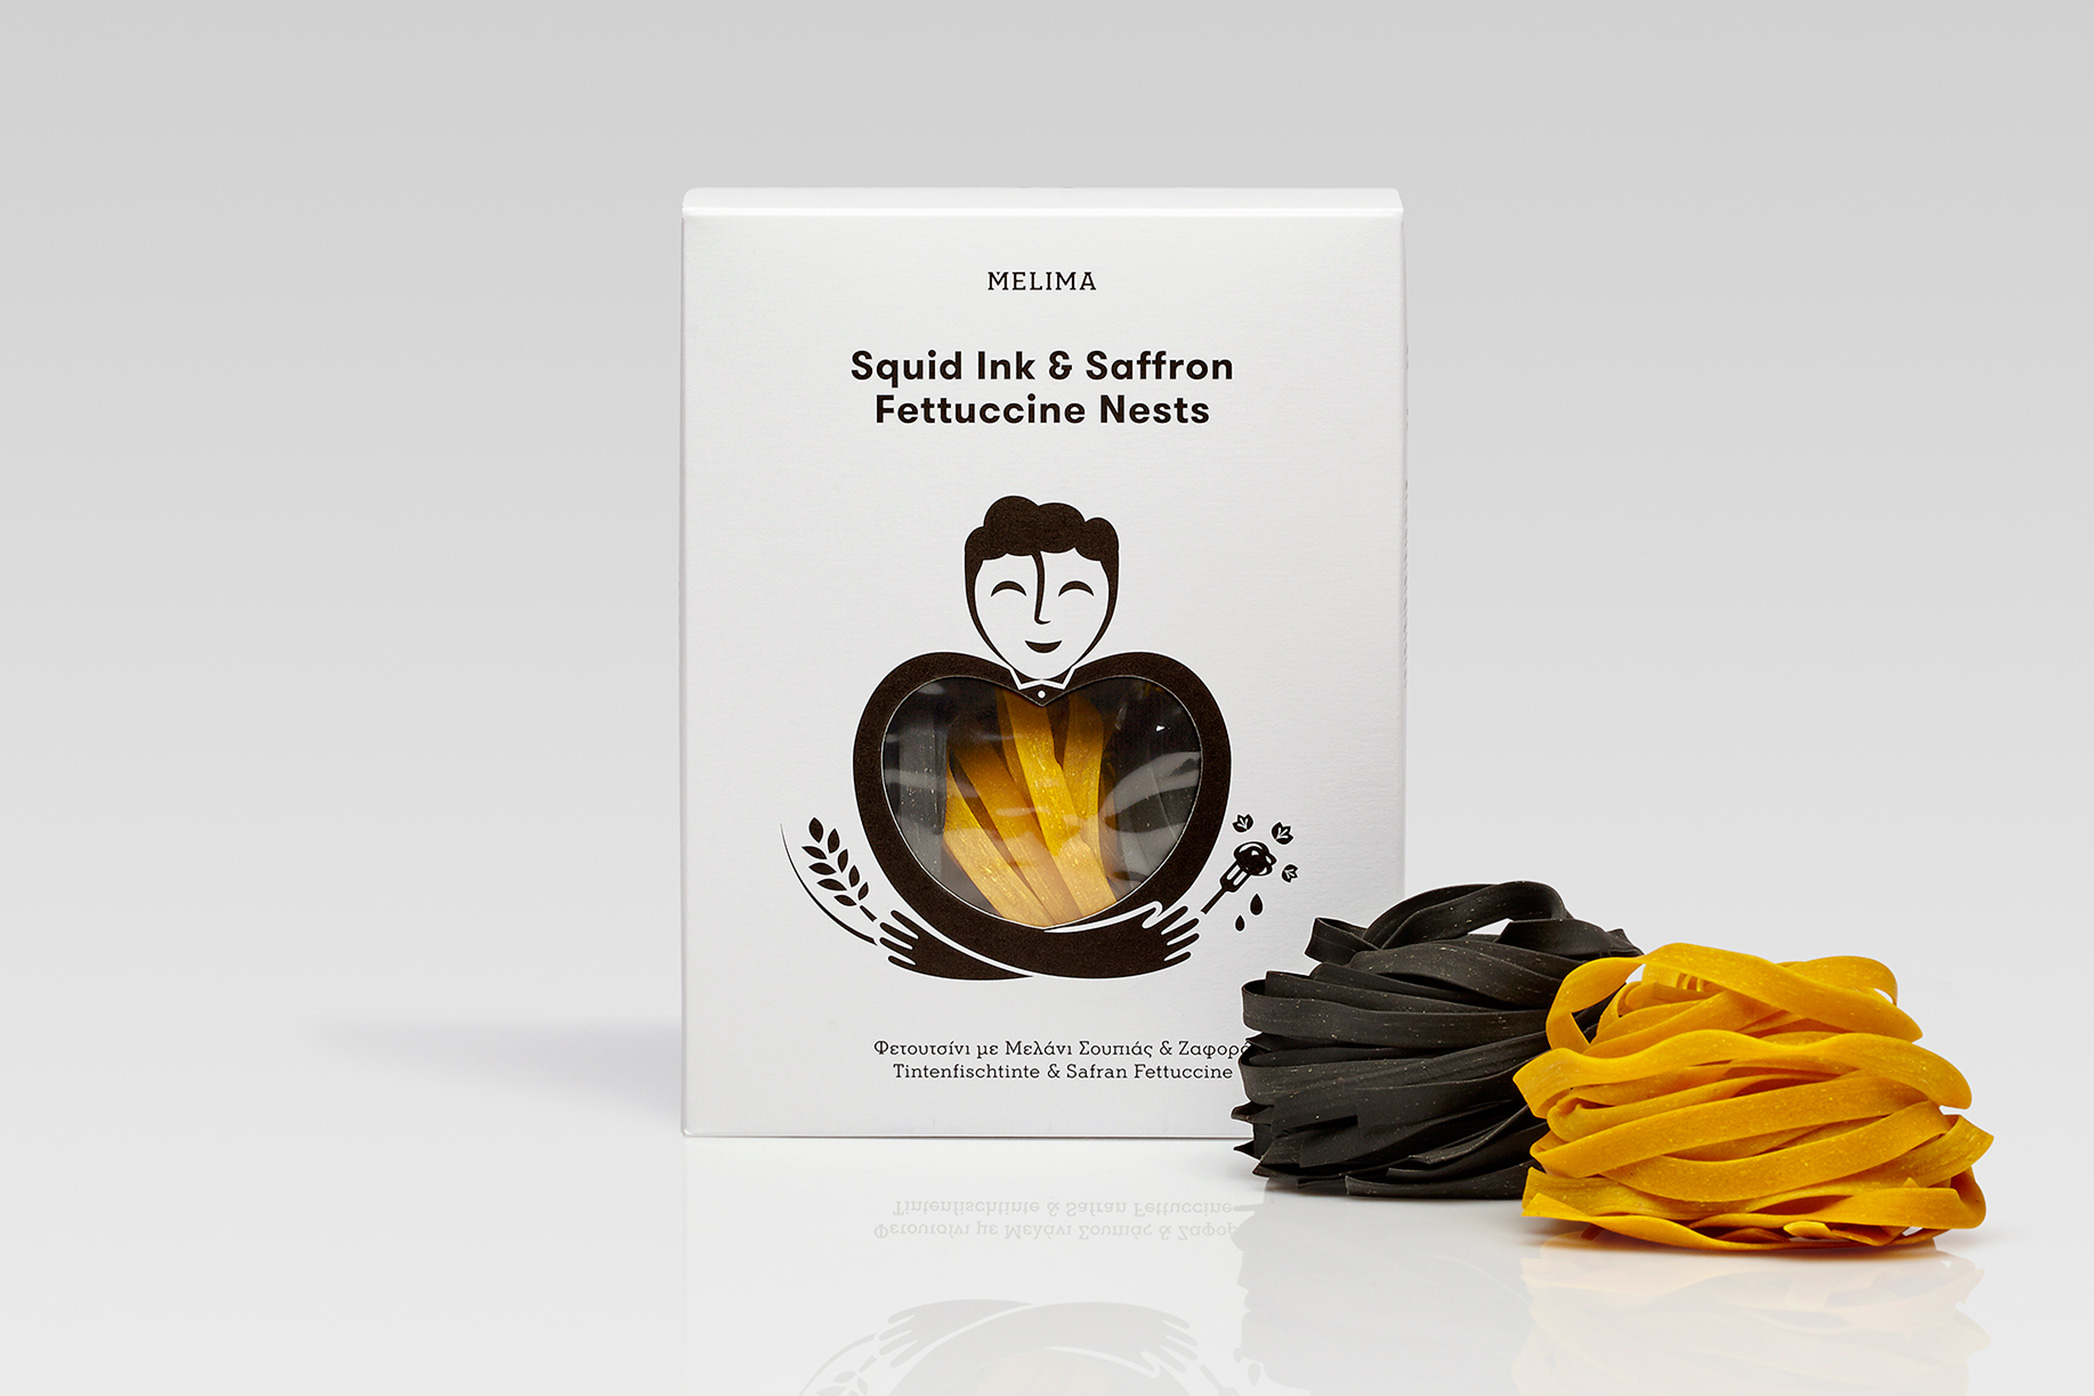 Squid Ink & Saffron Fettuccine Nests